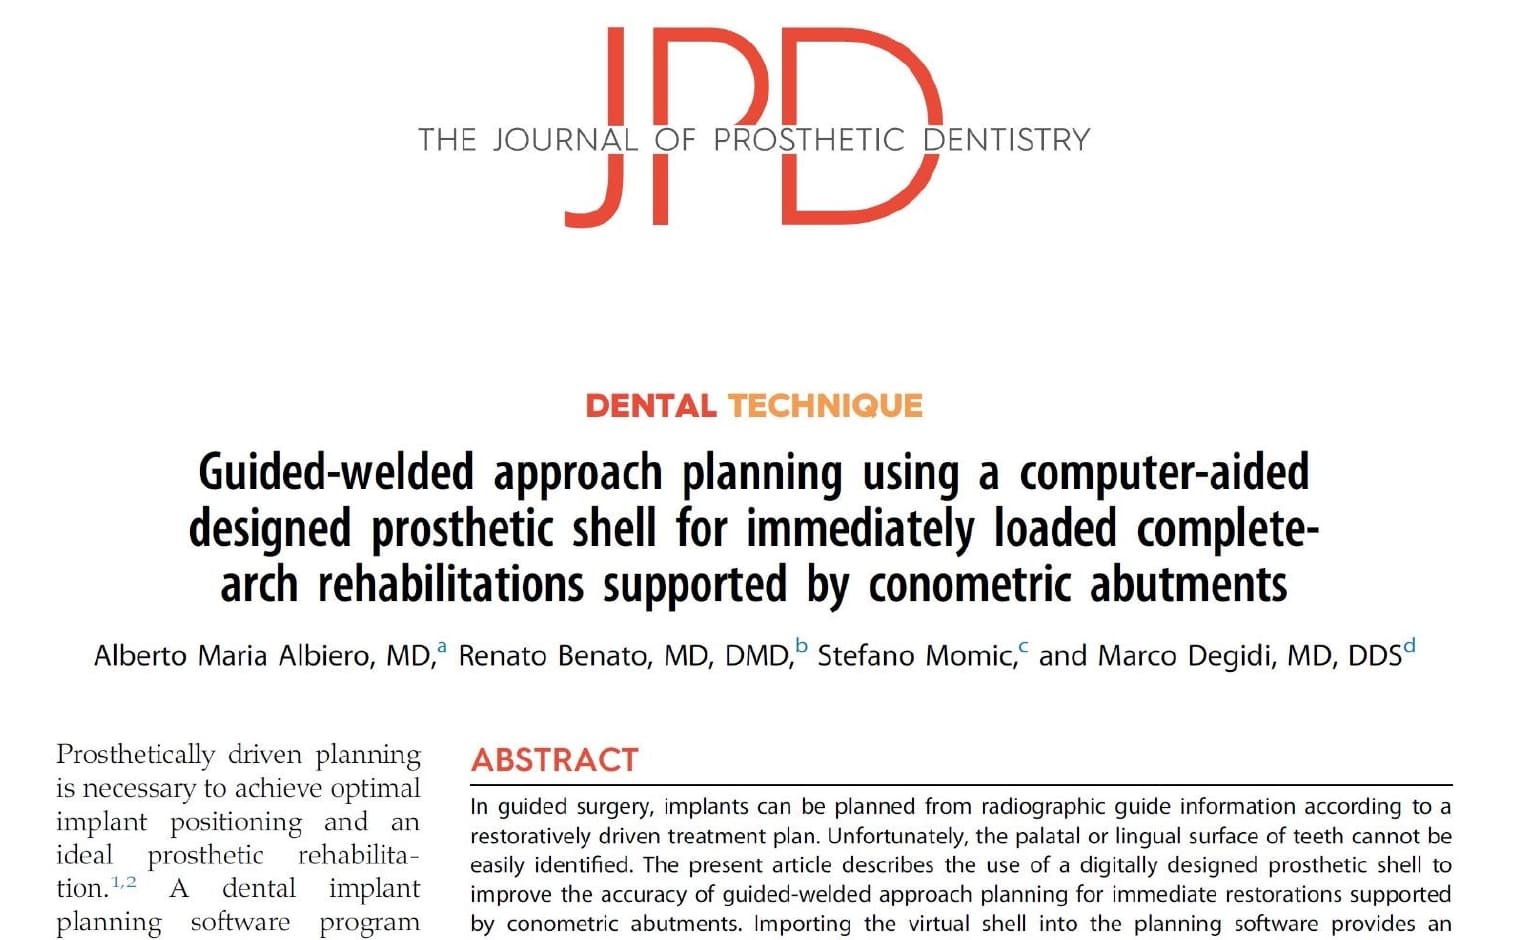 Articolo sulla tecnica dentale del JPD